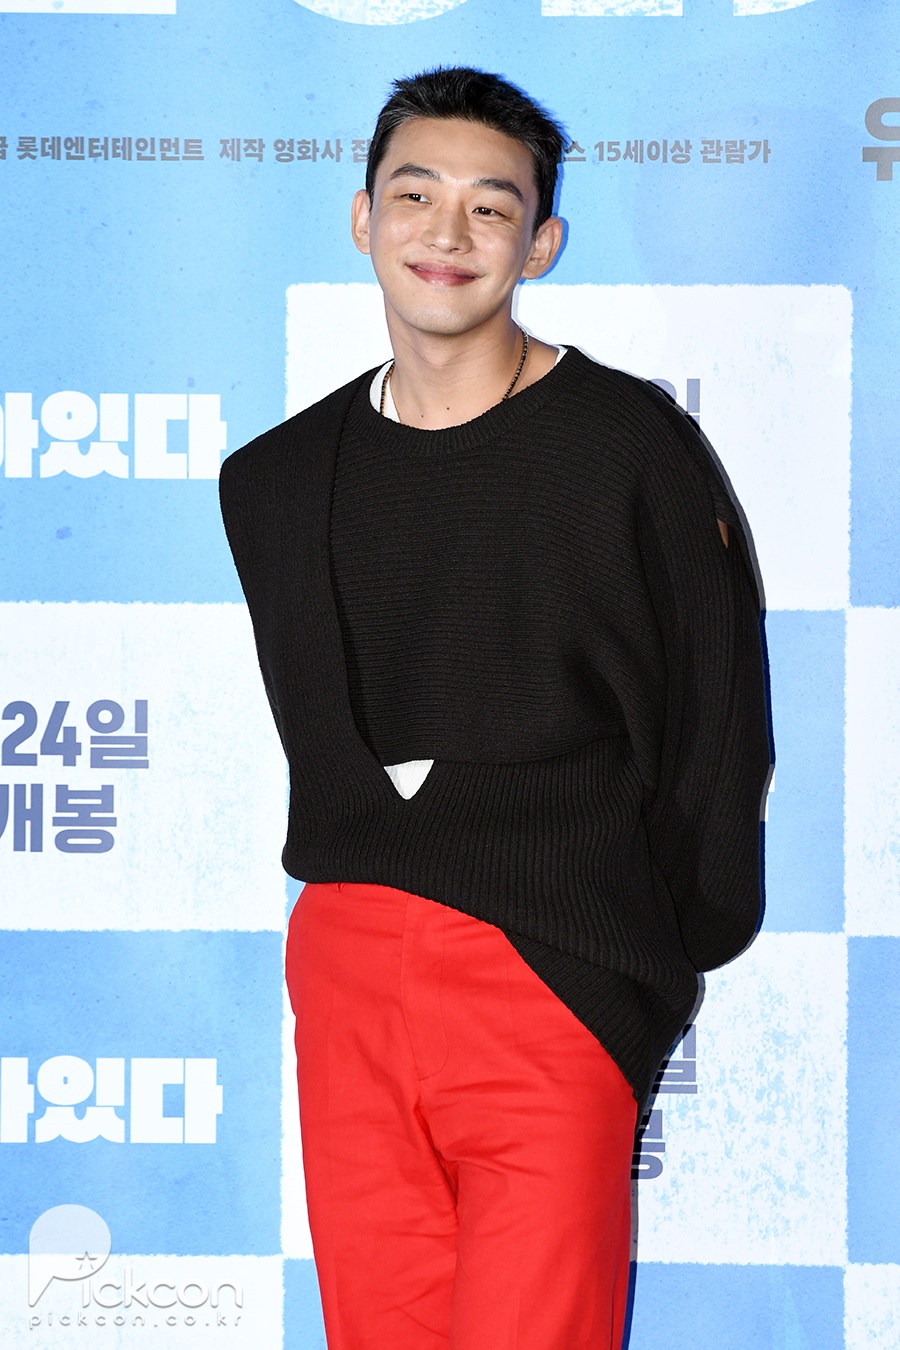 영화 '#살아있다' 언론시사회에 참석한 배우 유아인 / 사진 : 이대덕 기자, pr.chosunjns@gmail.com